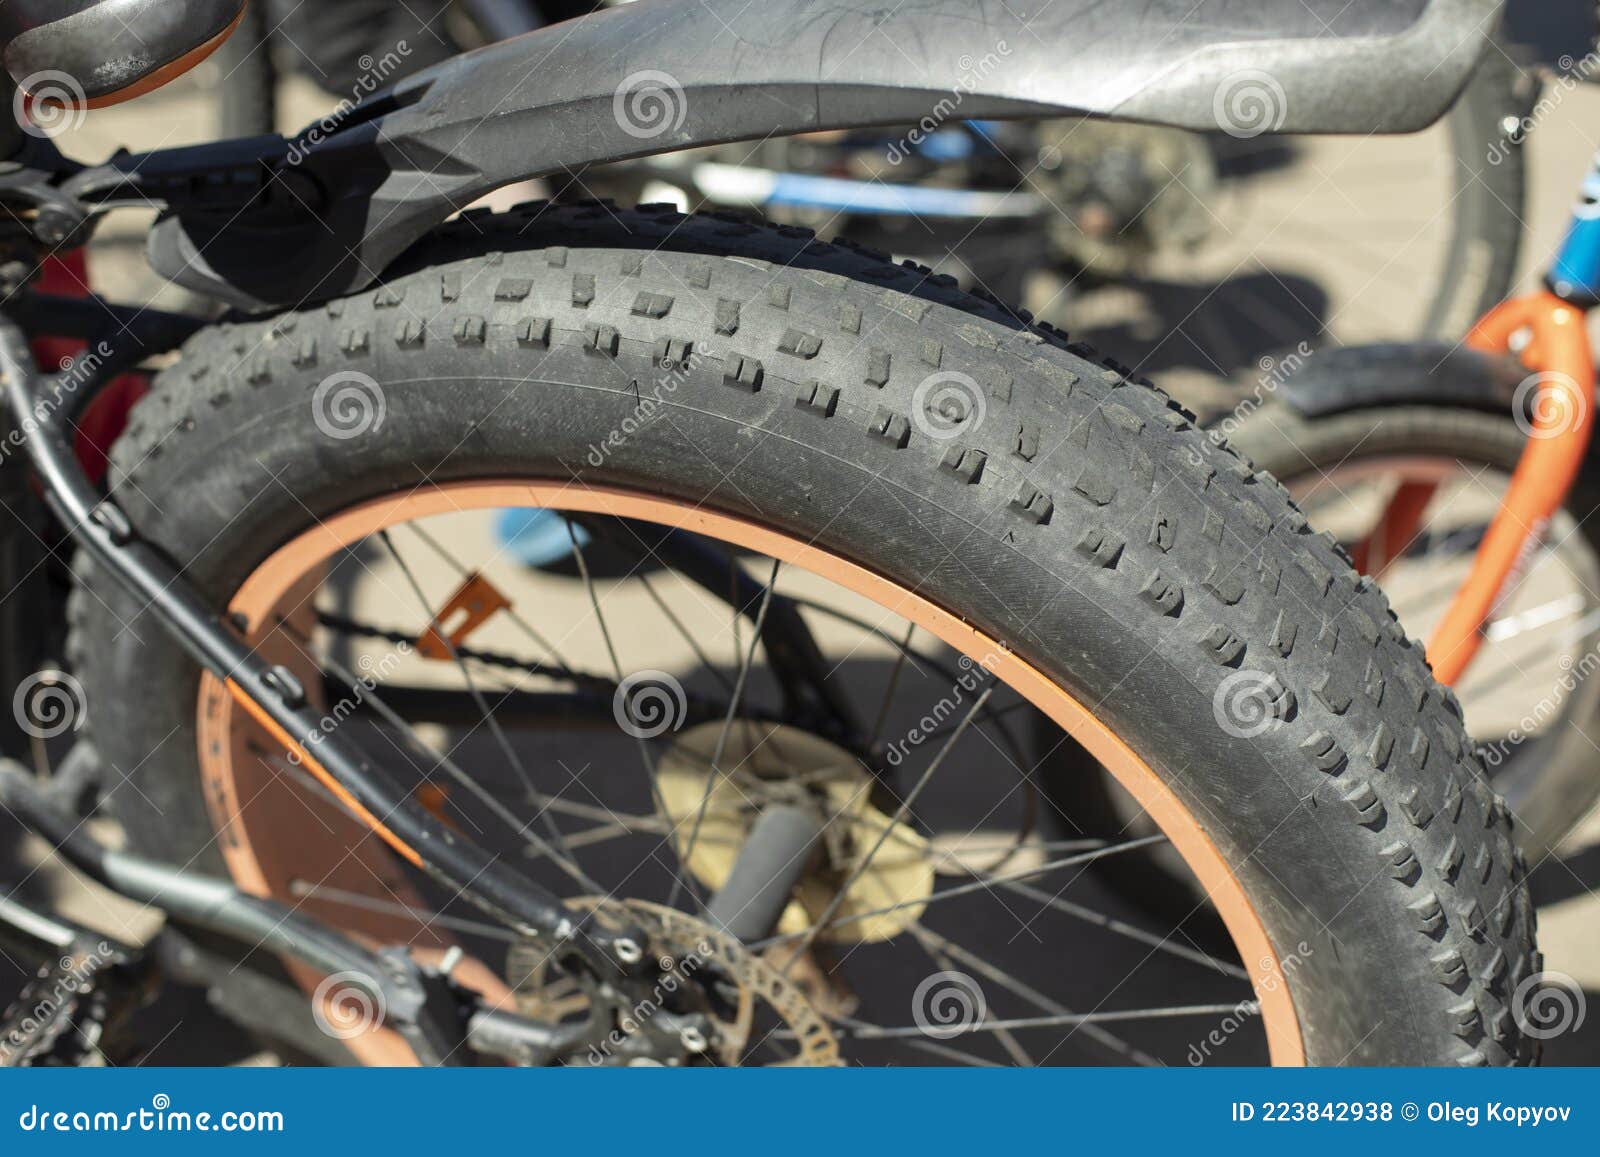 zingen hoofdstuk overschrijving Wiel. Brede Fietsband. Modderloopvlak Stock Foto - Image of fietsen,  schijf: 223842938